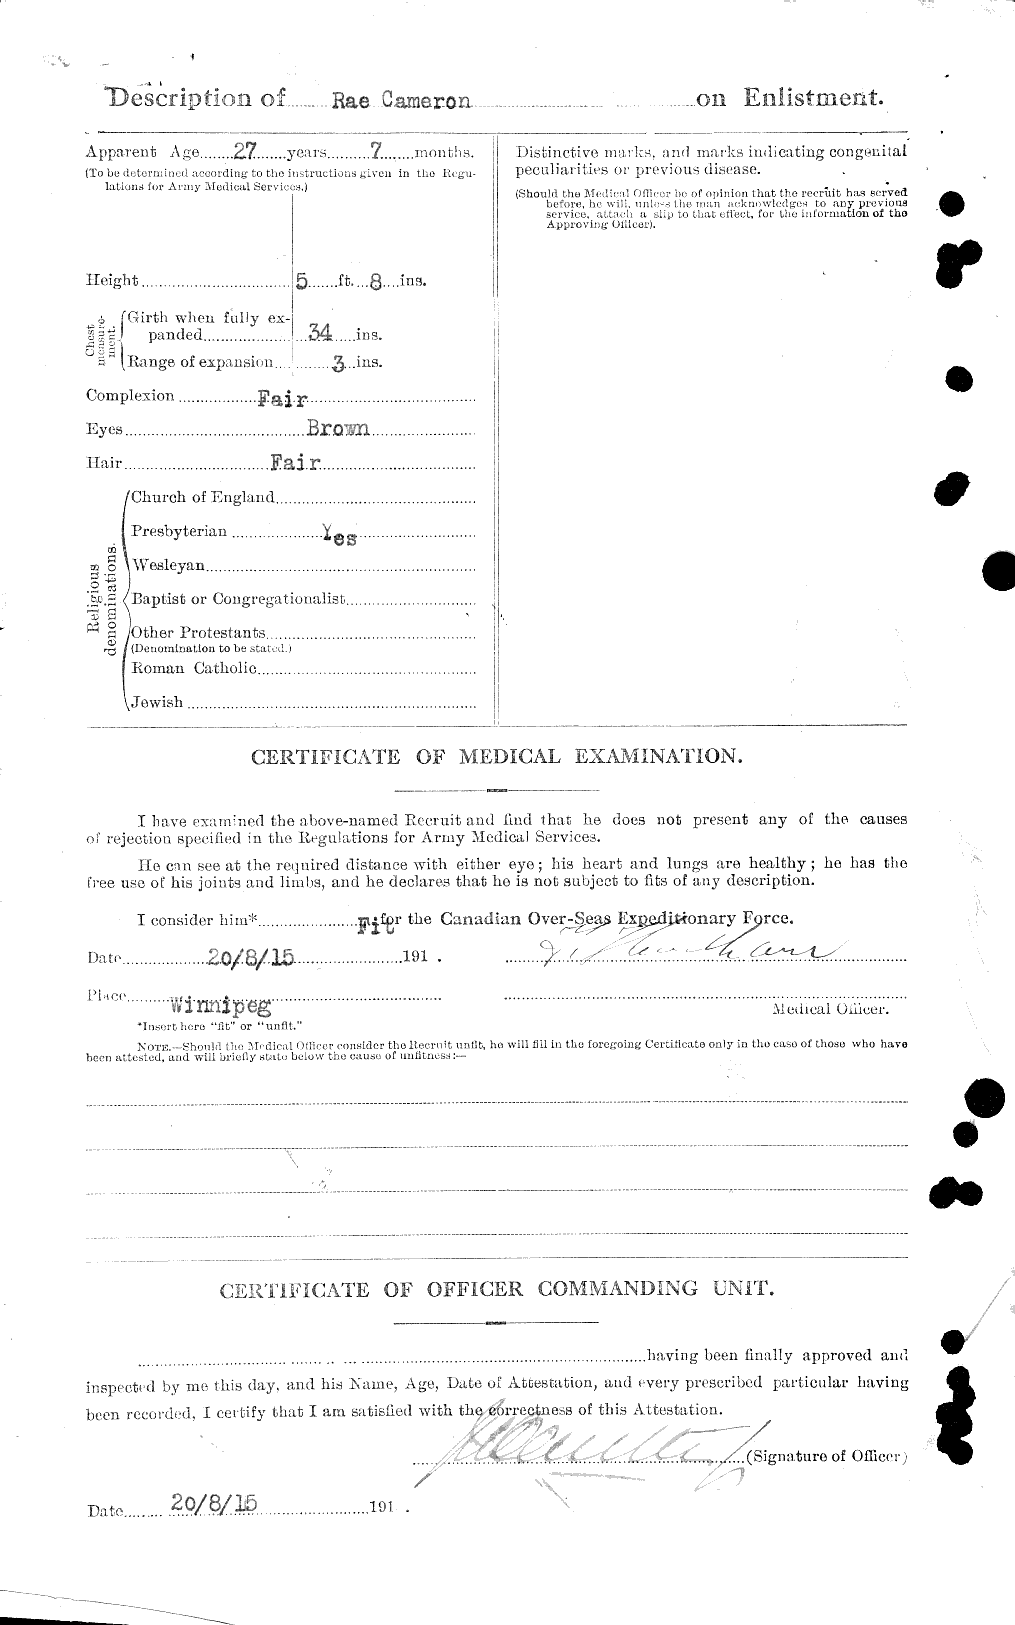 Dossiers du Personnel de la Première Guerre mondiale - CEC 002468b